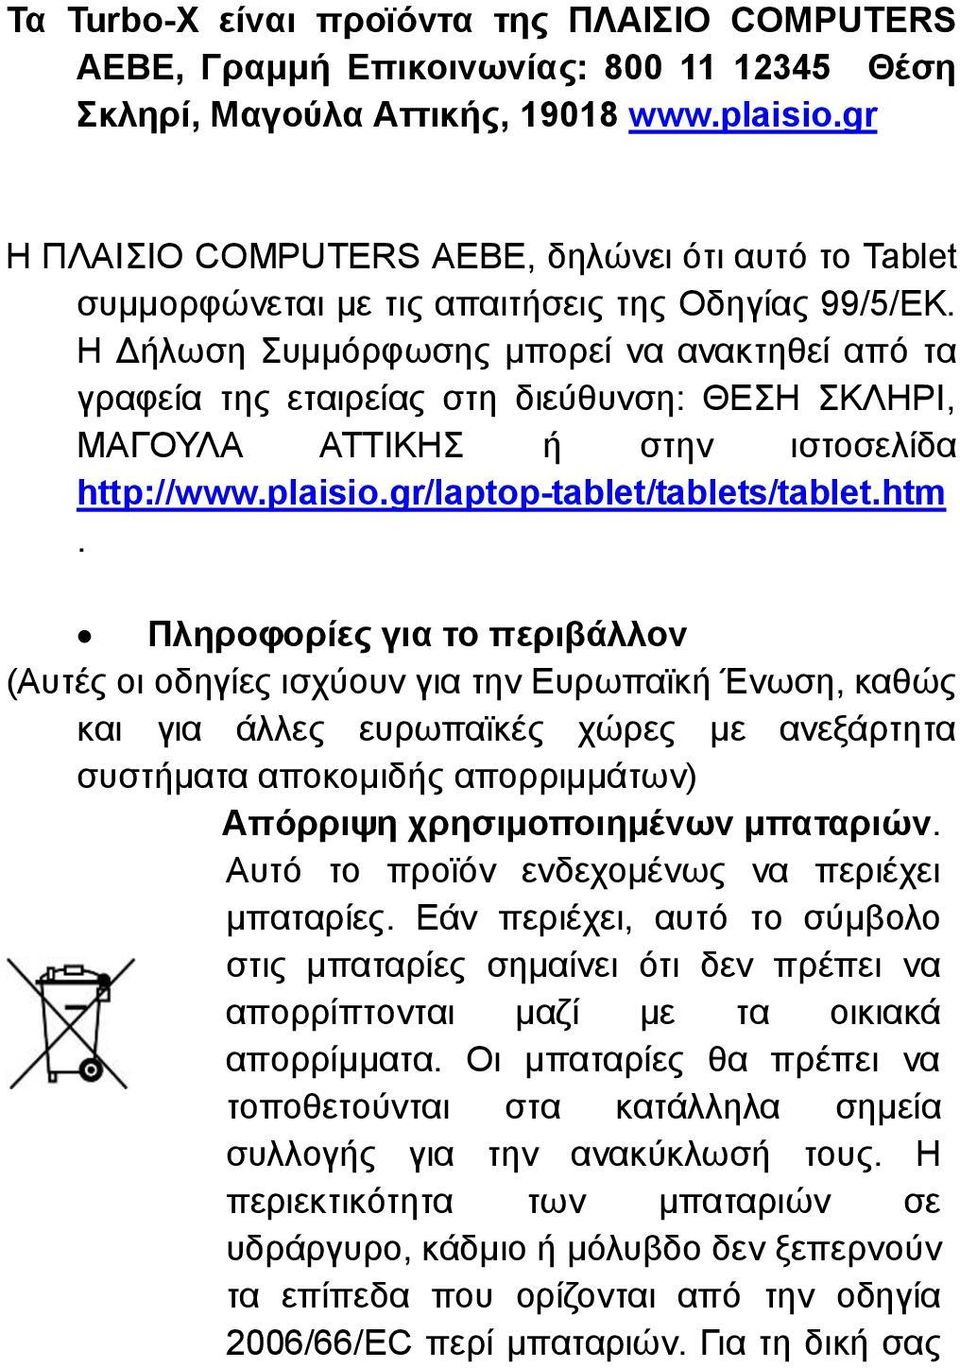 Η Δήλωση Συμμόρφωσης μπορεί να ανακτηθεί από τα γραφεία της εταιρείας στη διεύθυνση: ΘΕΣΗ ΣΚΛΗΡΙ, ΜΑΓΟΥΛΑ ΑΤΤΙΚΗΣ ή στην ιστοσελίδα http://www.plaisio.gr/laptop-tablet/tablets/tablet.htm.